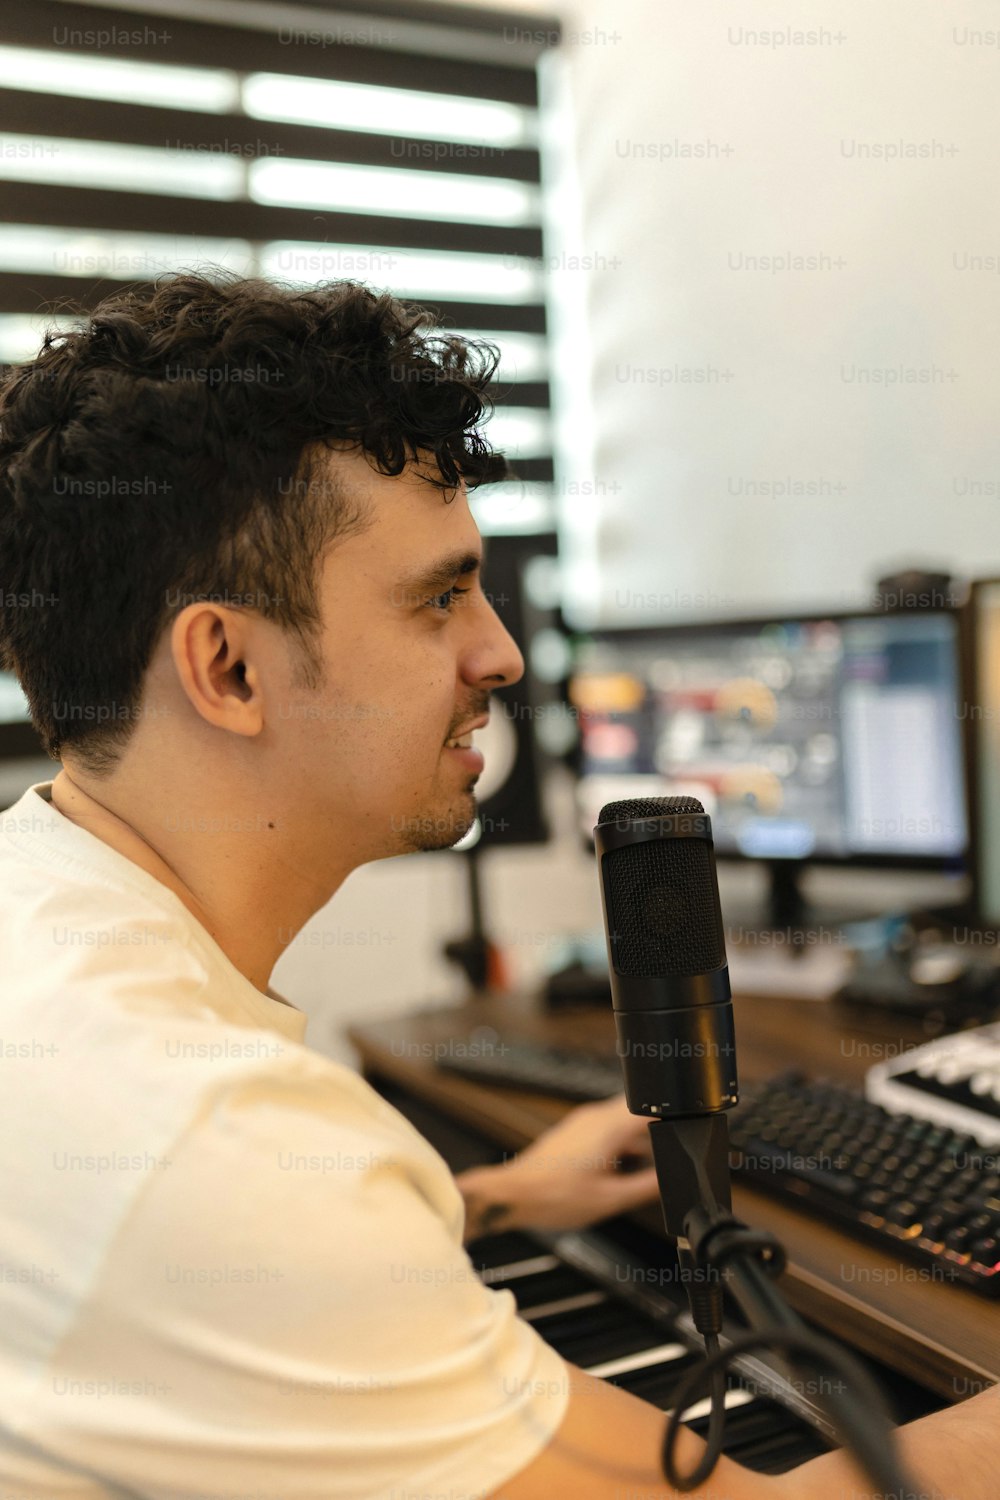 Un uomo seduto davanti a un computer con un microfono